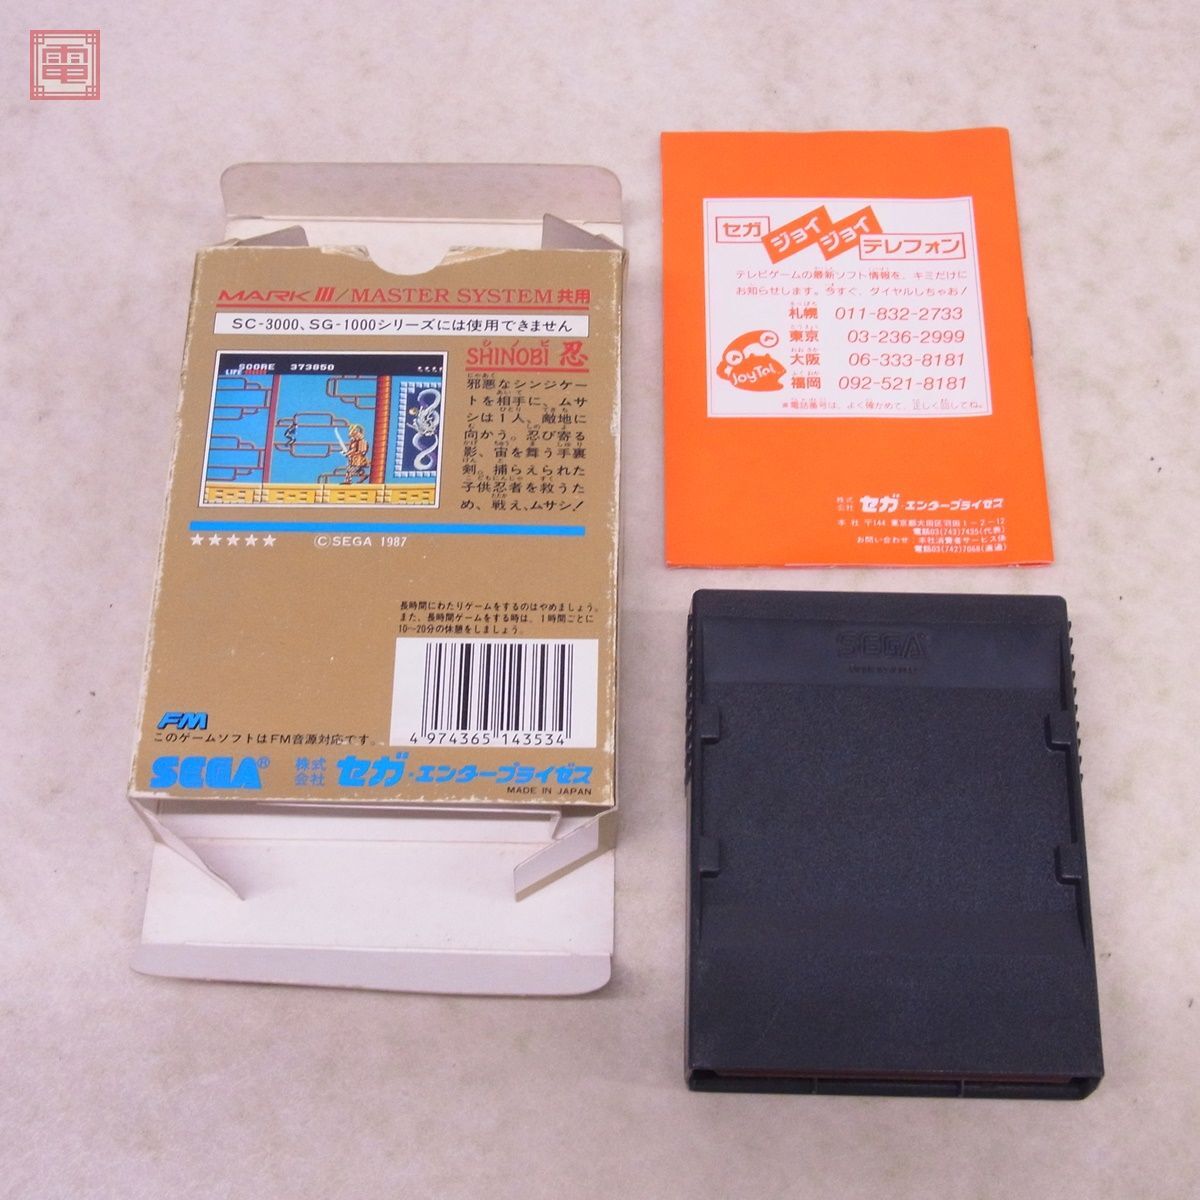  operation guarantee goods Mark III SHINOBI. shino biSEGA Sega box opinion attaching [10